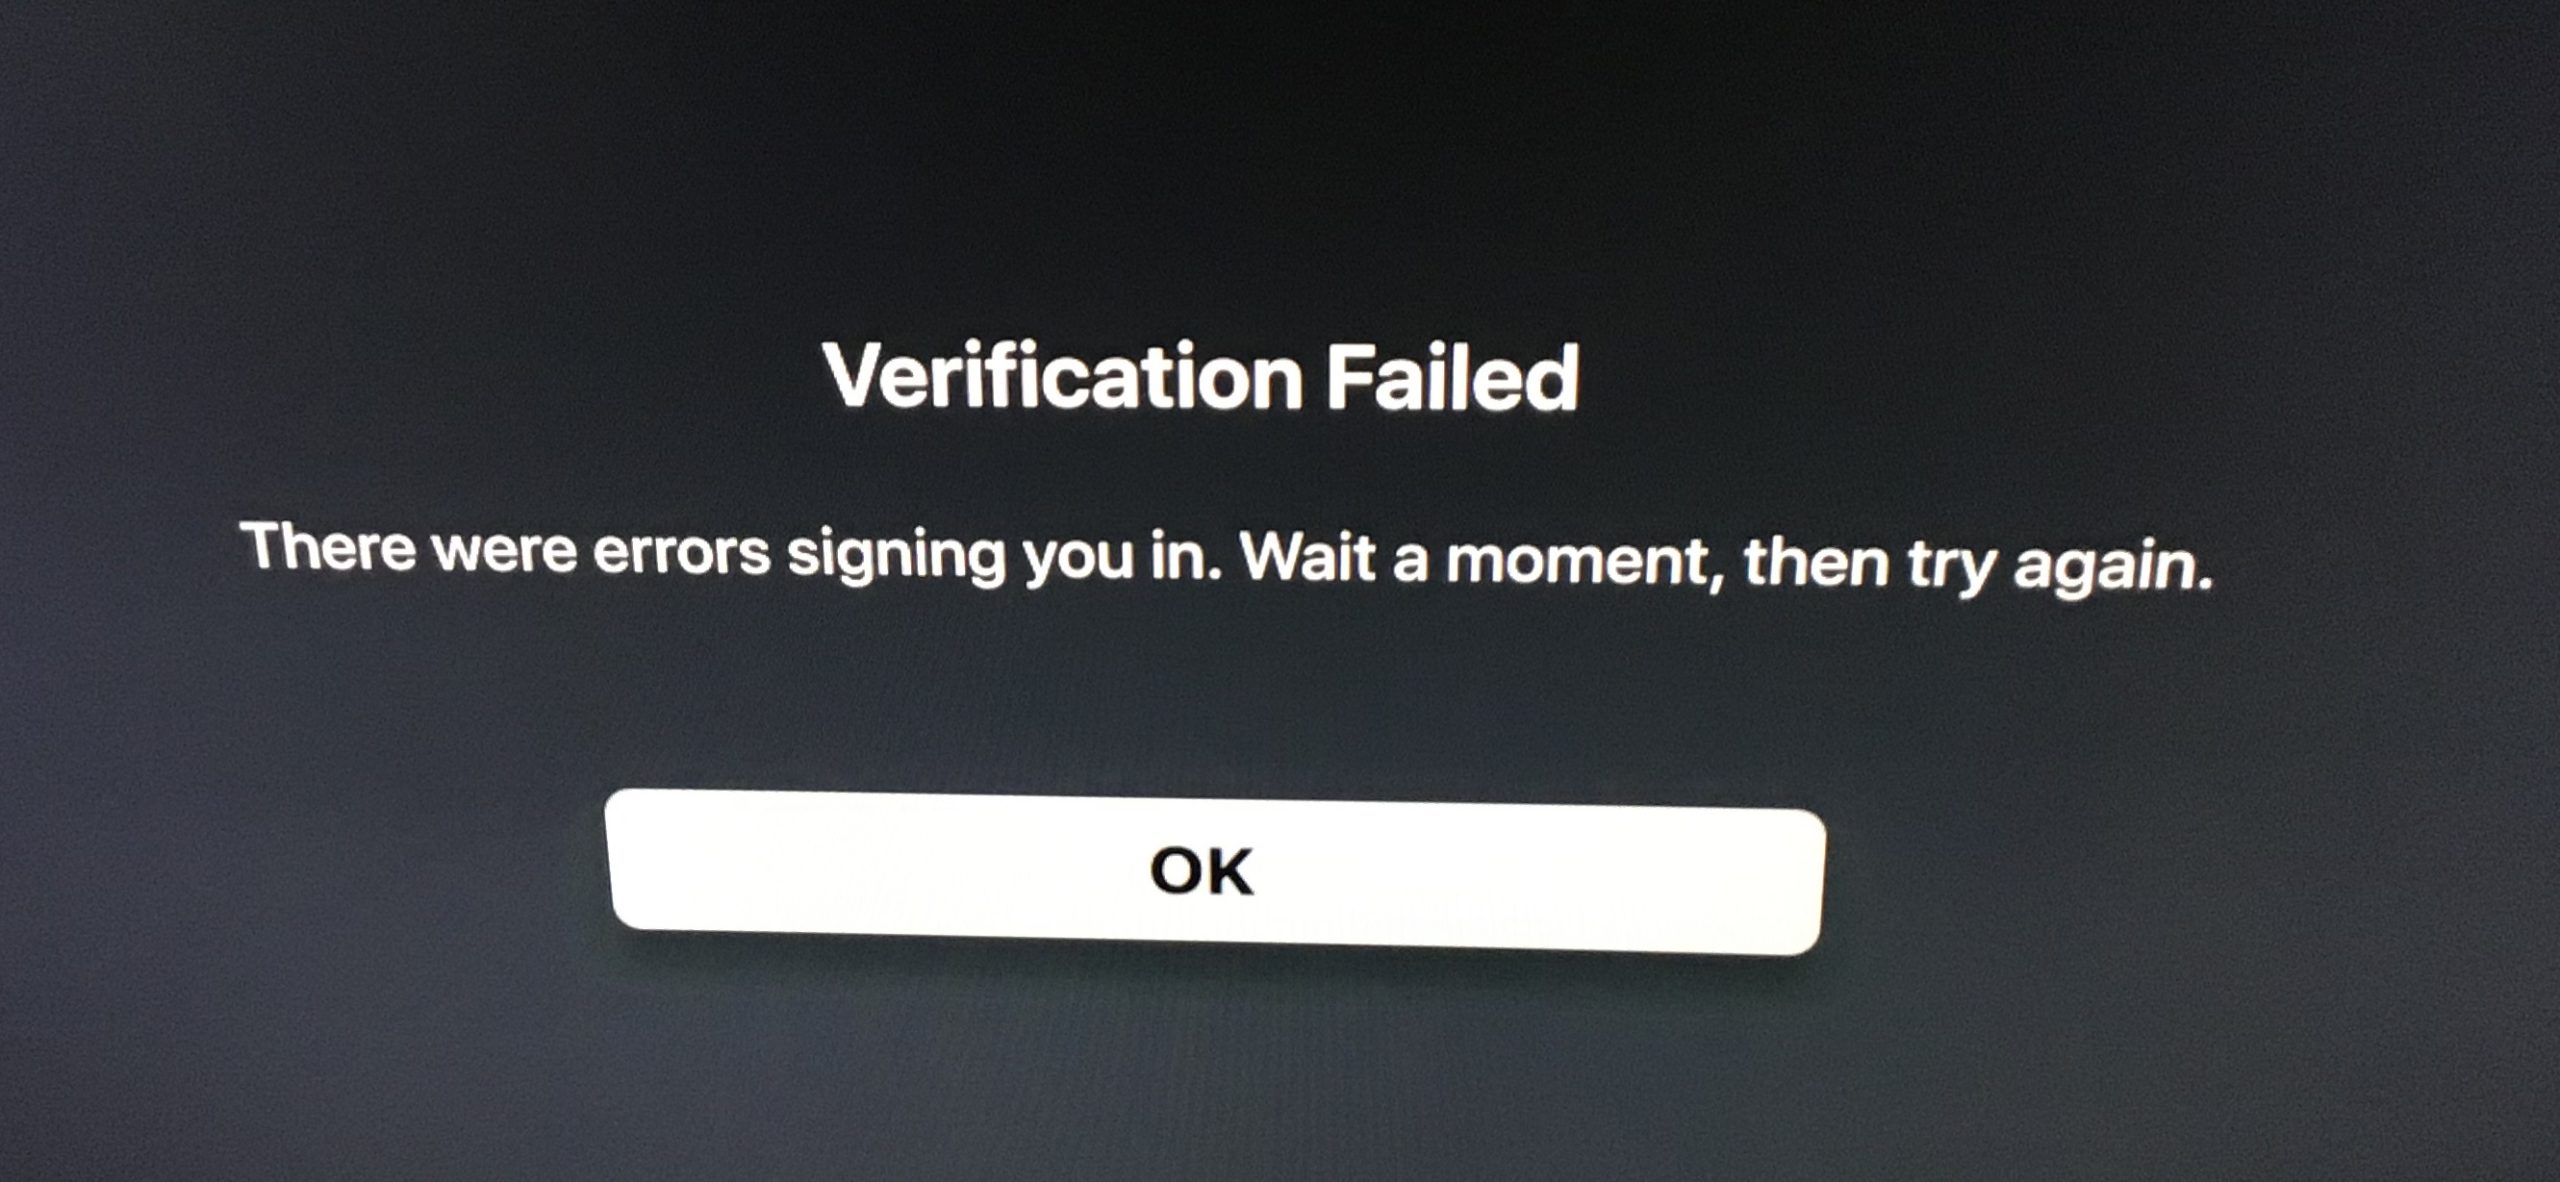 Device verification failed